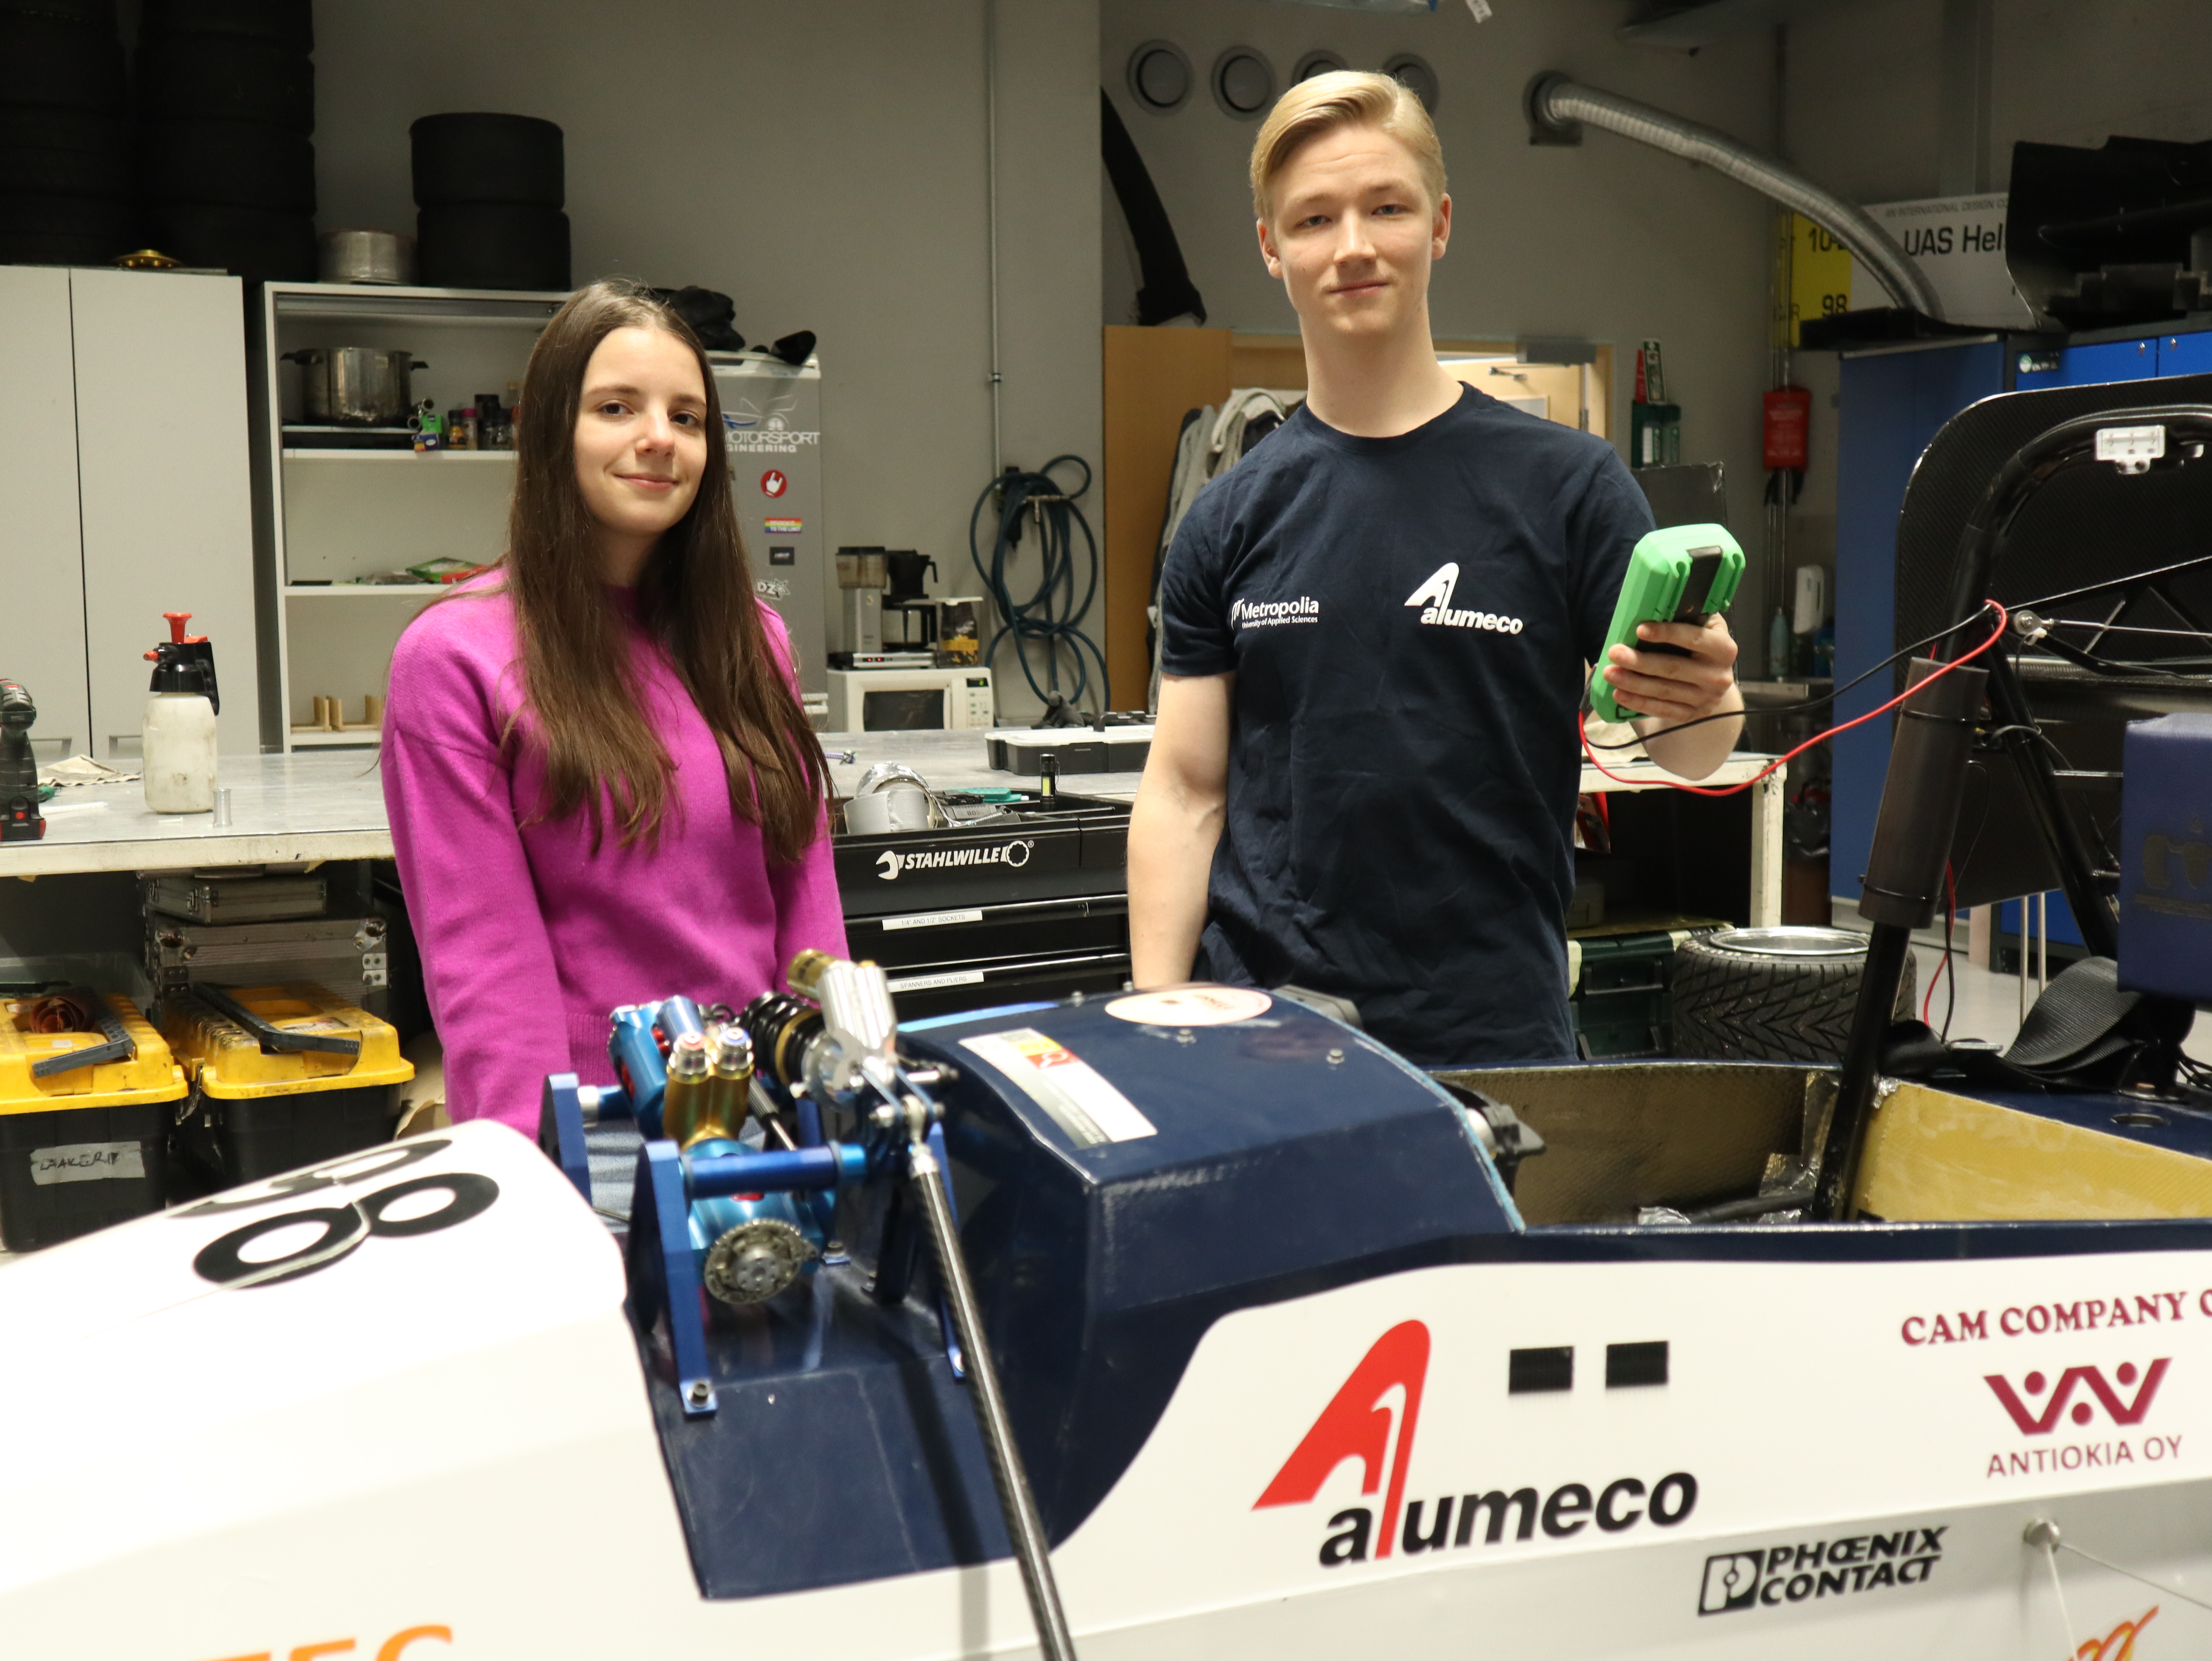 Metropolian opiskelija Antti Räisänen ja Aalto-yliopiston opiskelija Alexia Badescu ovat valmiina vuoden kilpa-autoprojektiin.